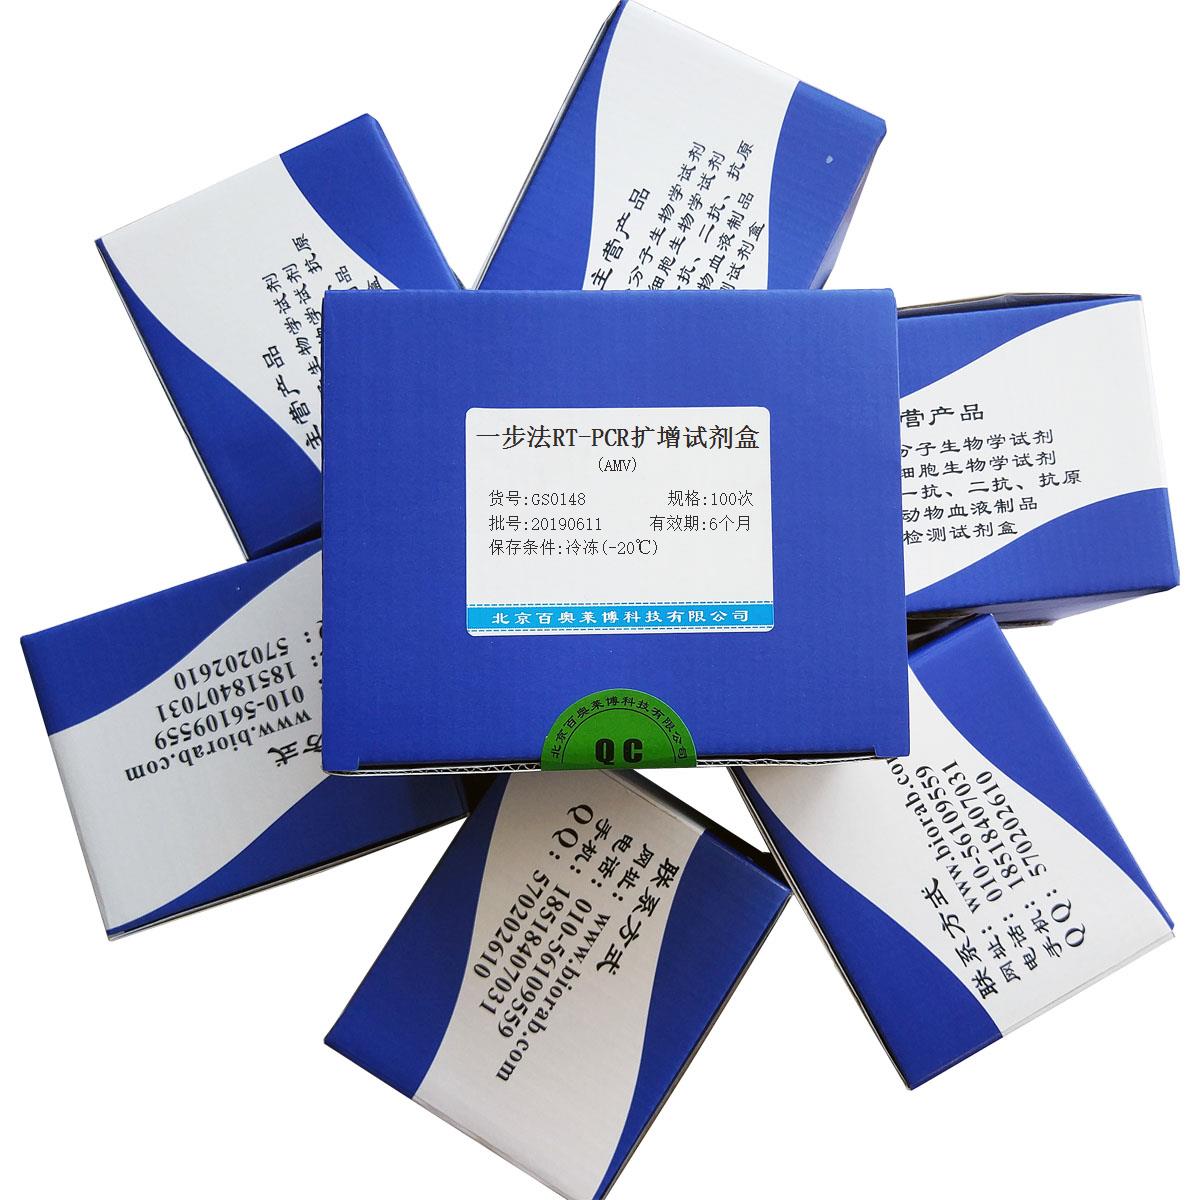 一步法RT-PCR扩增试剂盒(AMV)北京供应商